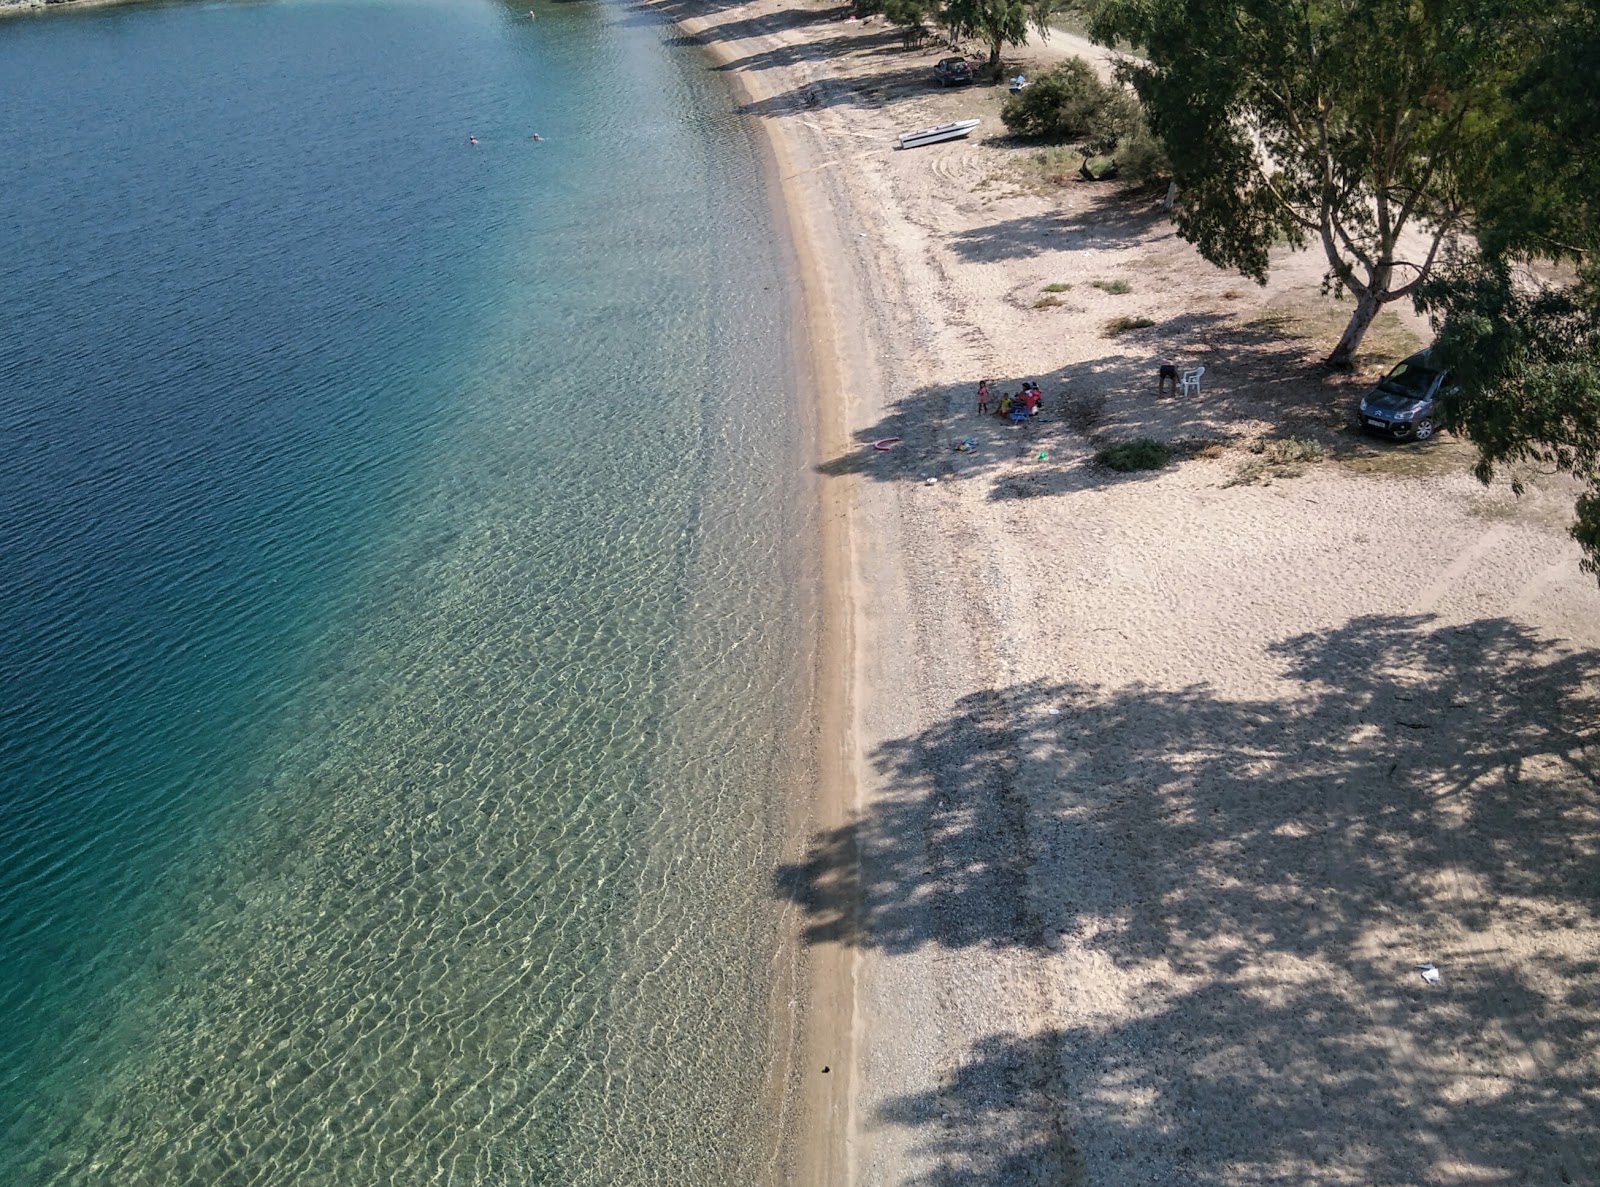 Foto af Pantermos beach - populært sted blandt afslapningskendere